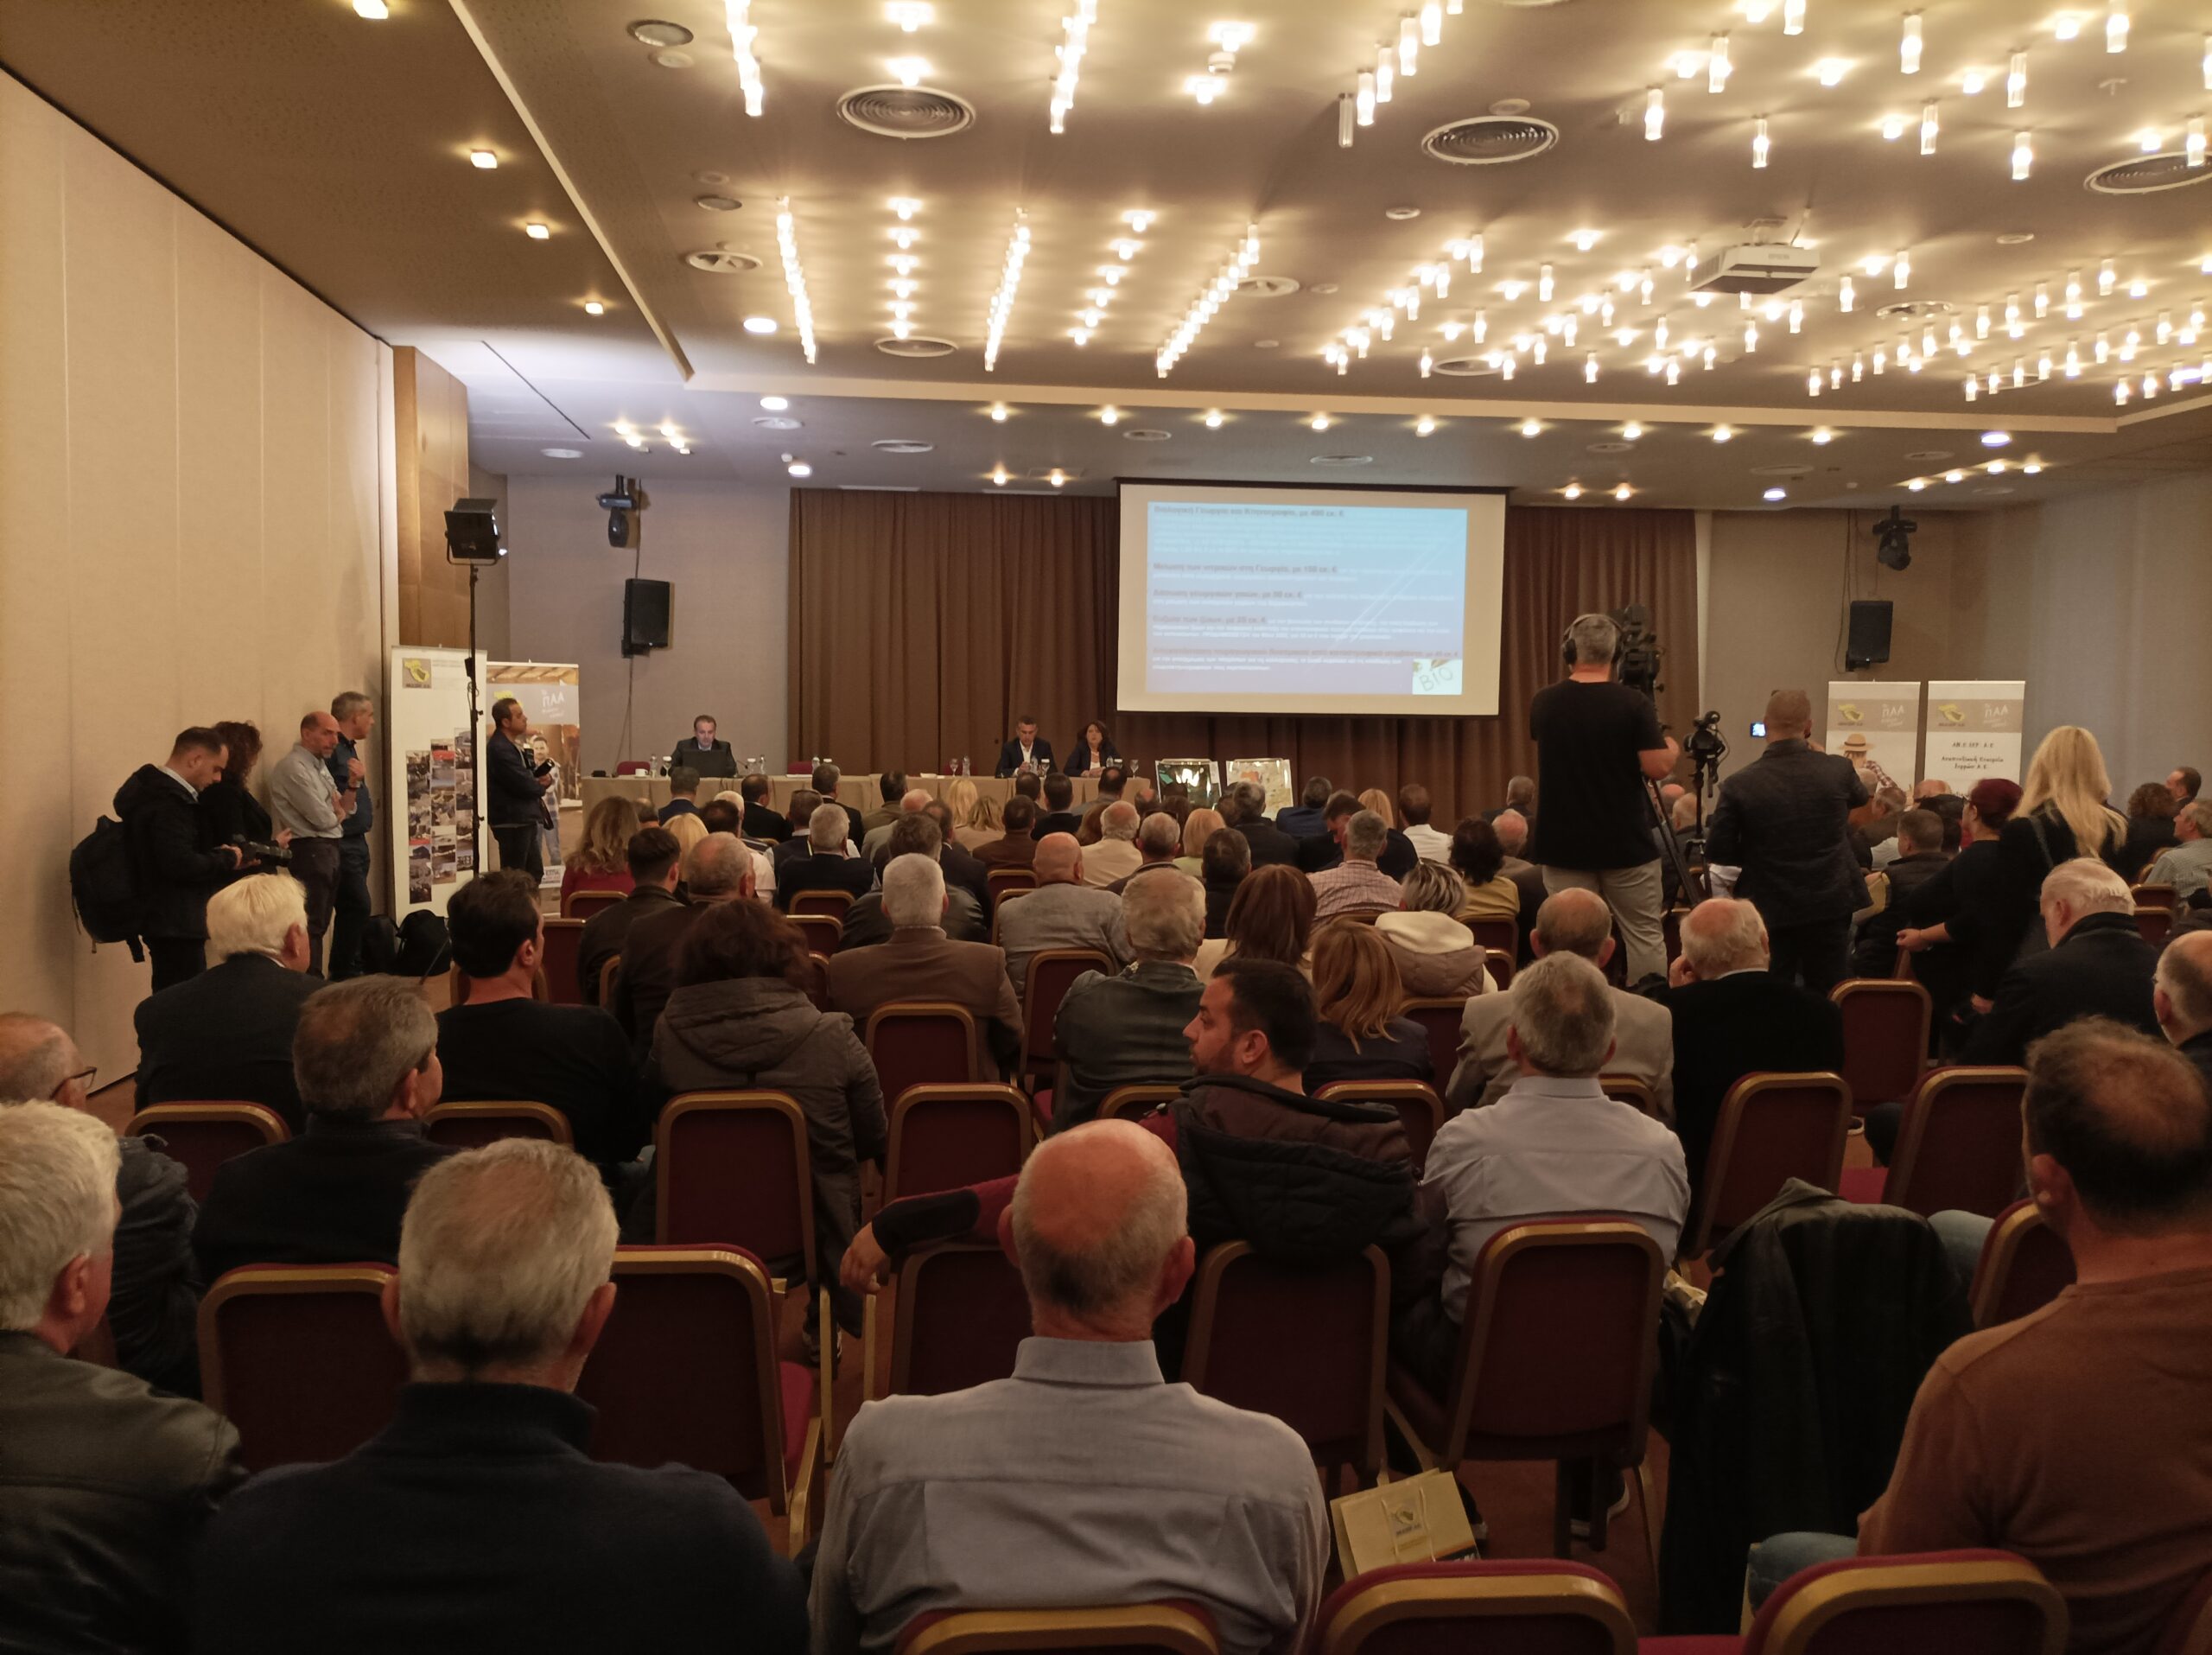 Σέρρες: Με μεγάλη συμμετοχή κόσμου η εκδήλωση για τις εγγειοβελτιωτικές υποδομές και το LEADER